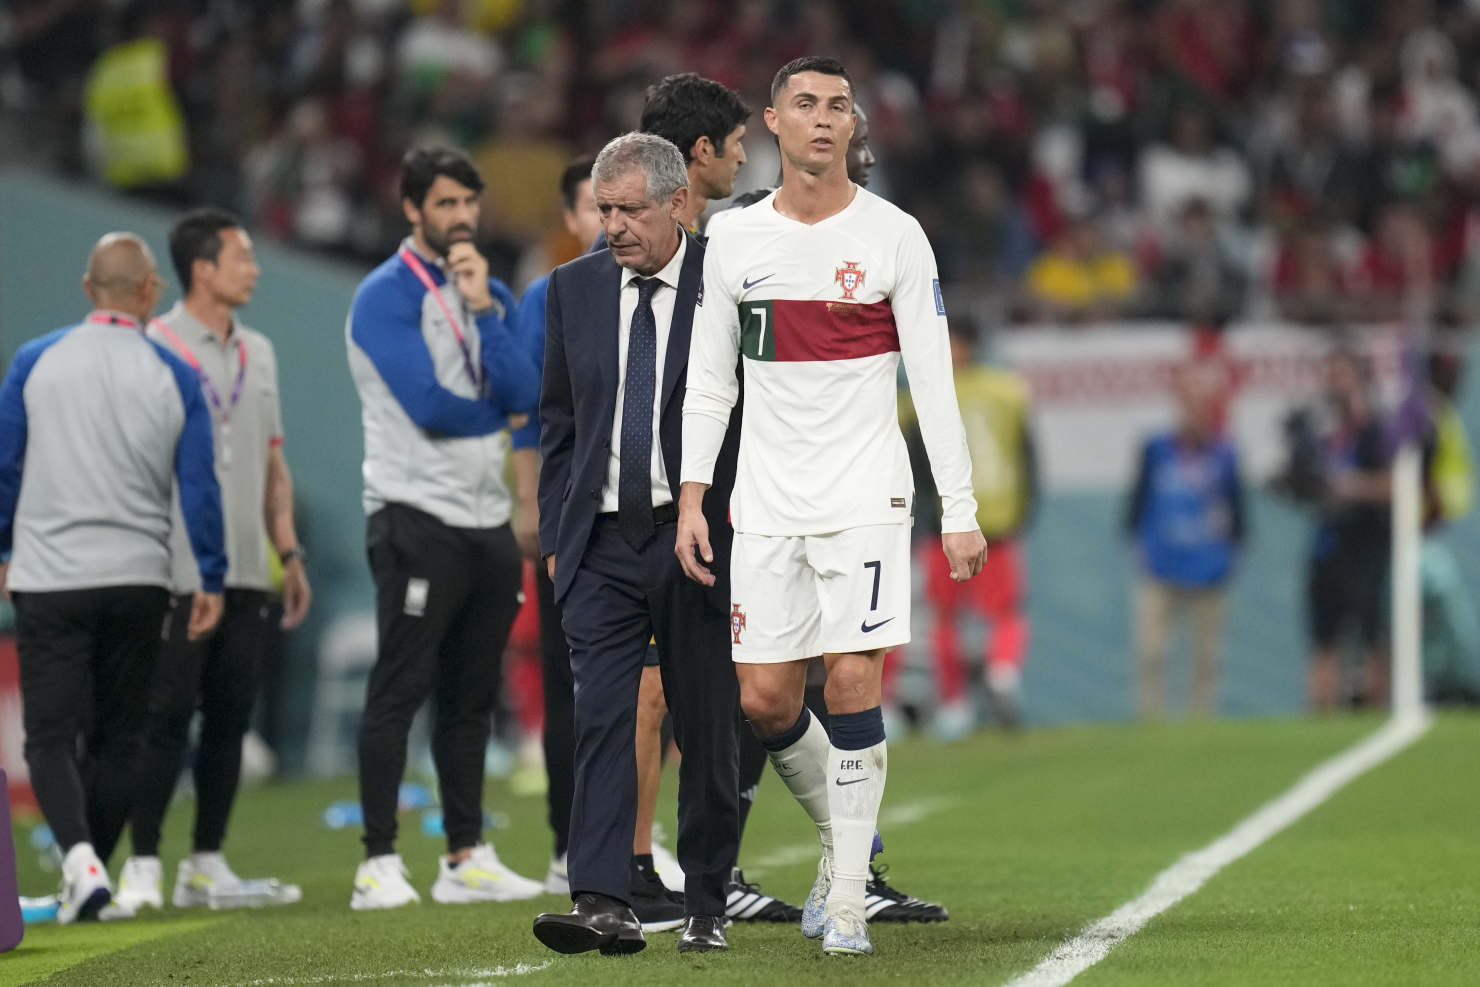 Bồ Đào Nha kêu gọi đoàn kết sau nghi án Ronaldo mắng HLV - Ảnh 2.